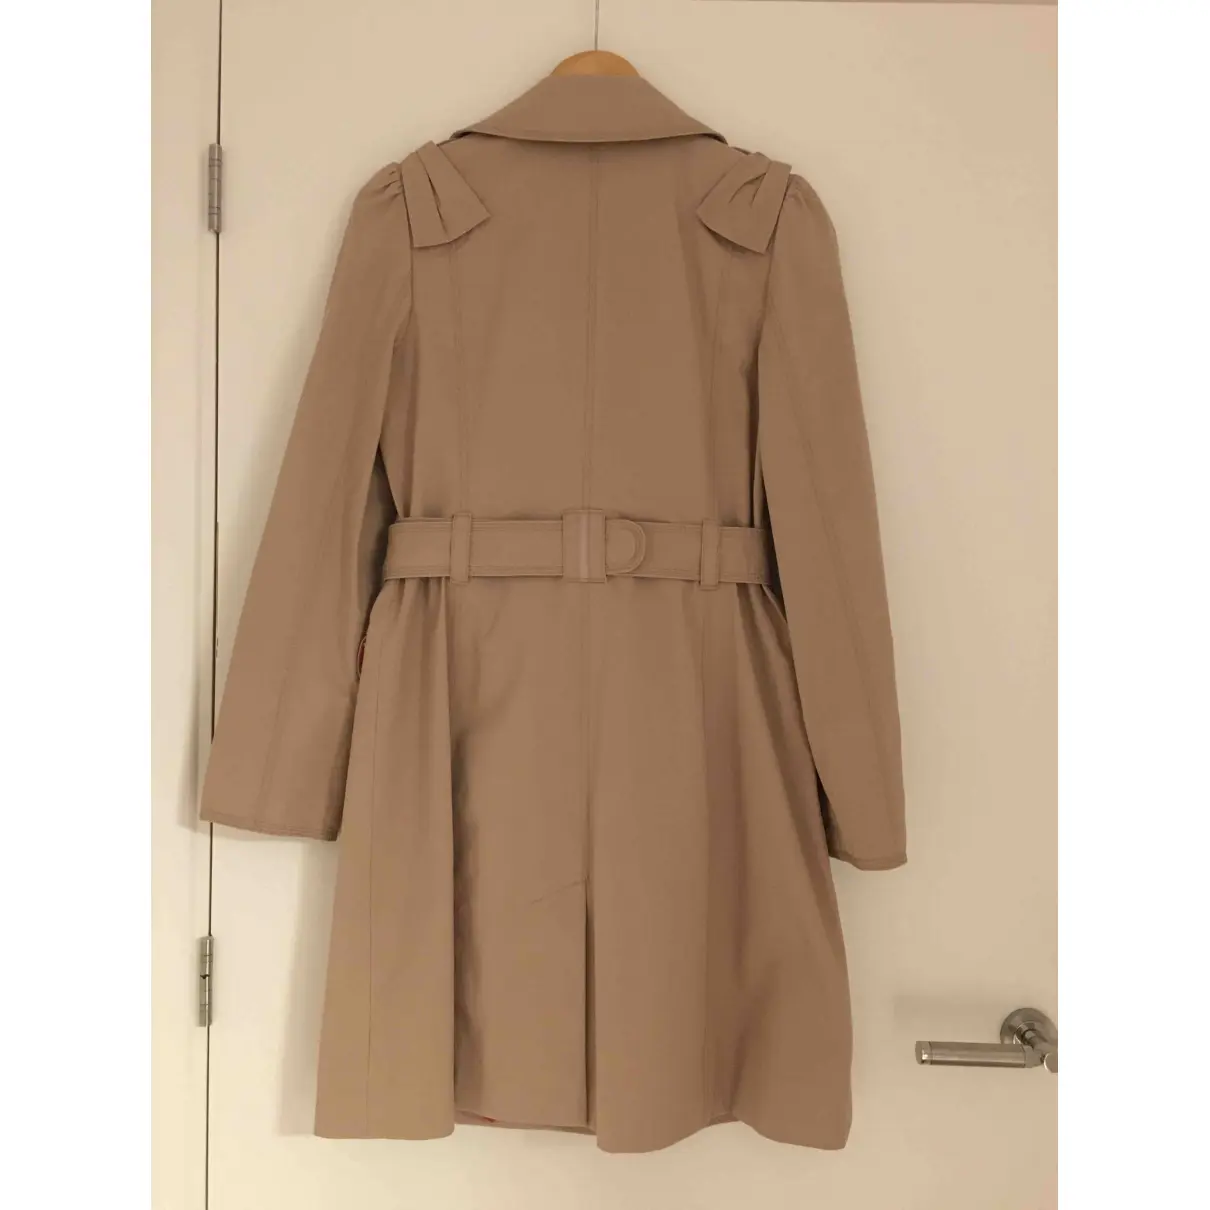 Buy Juicy Couture Trench coat online